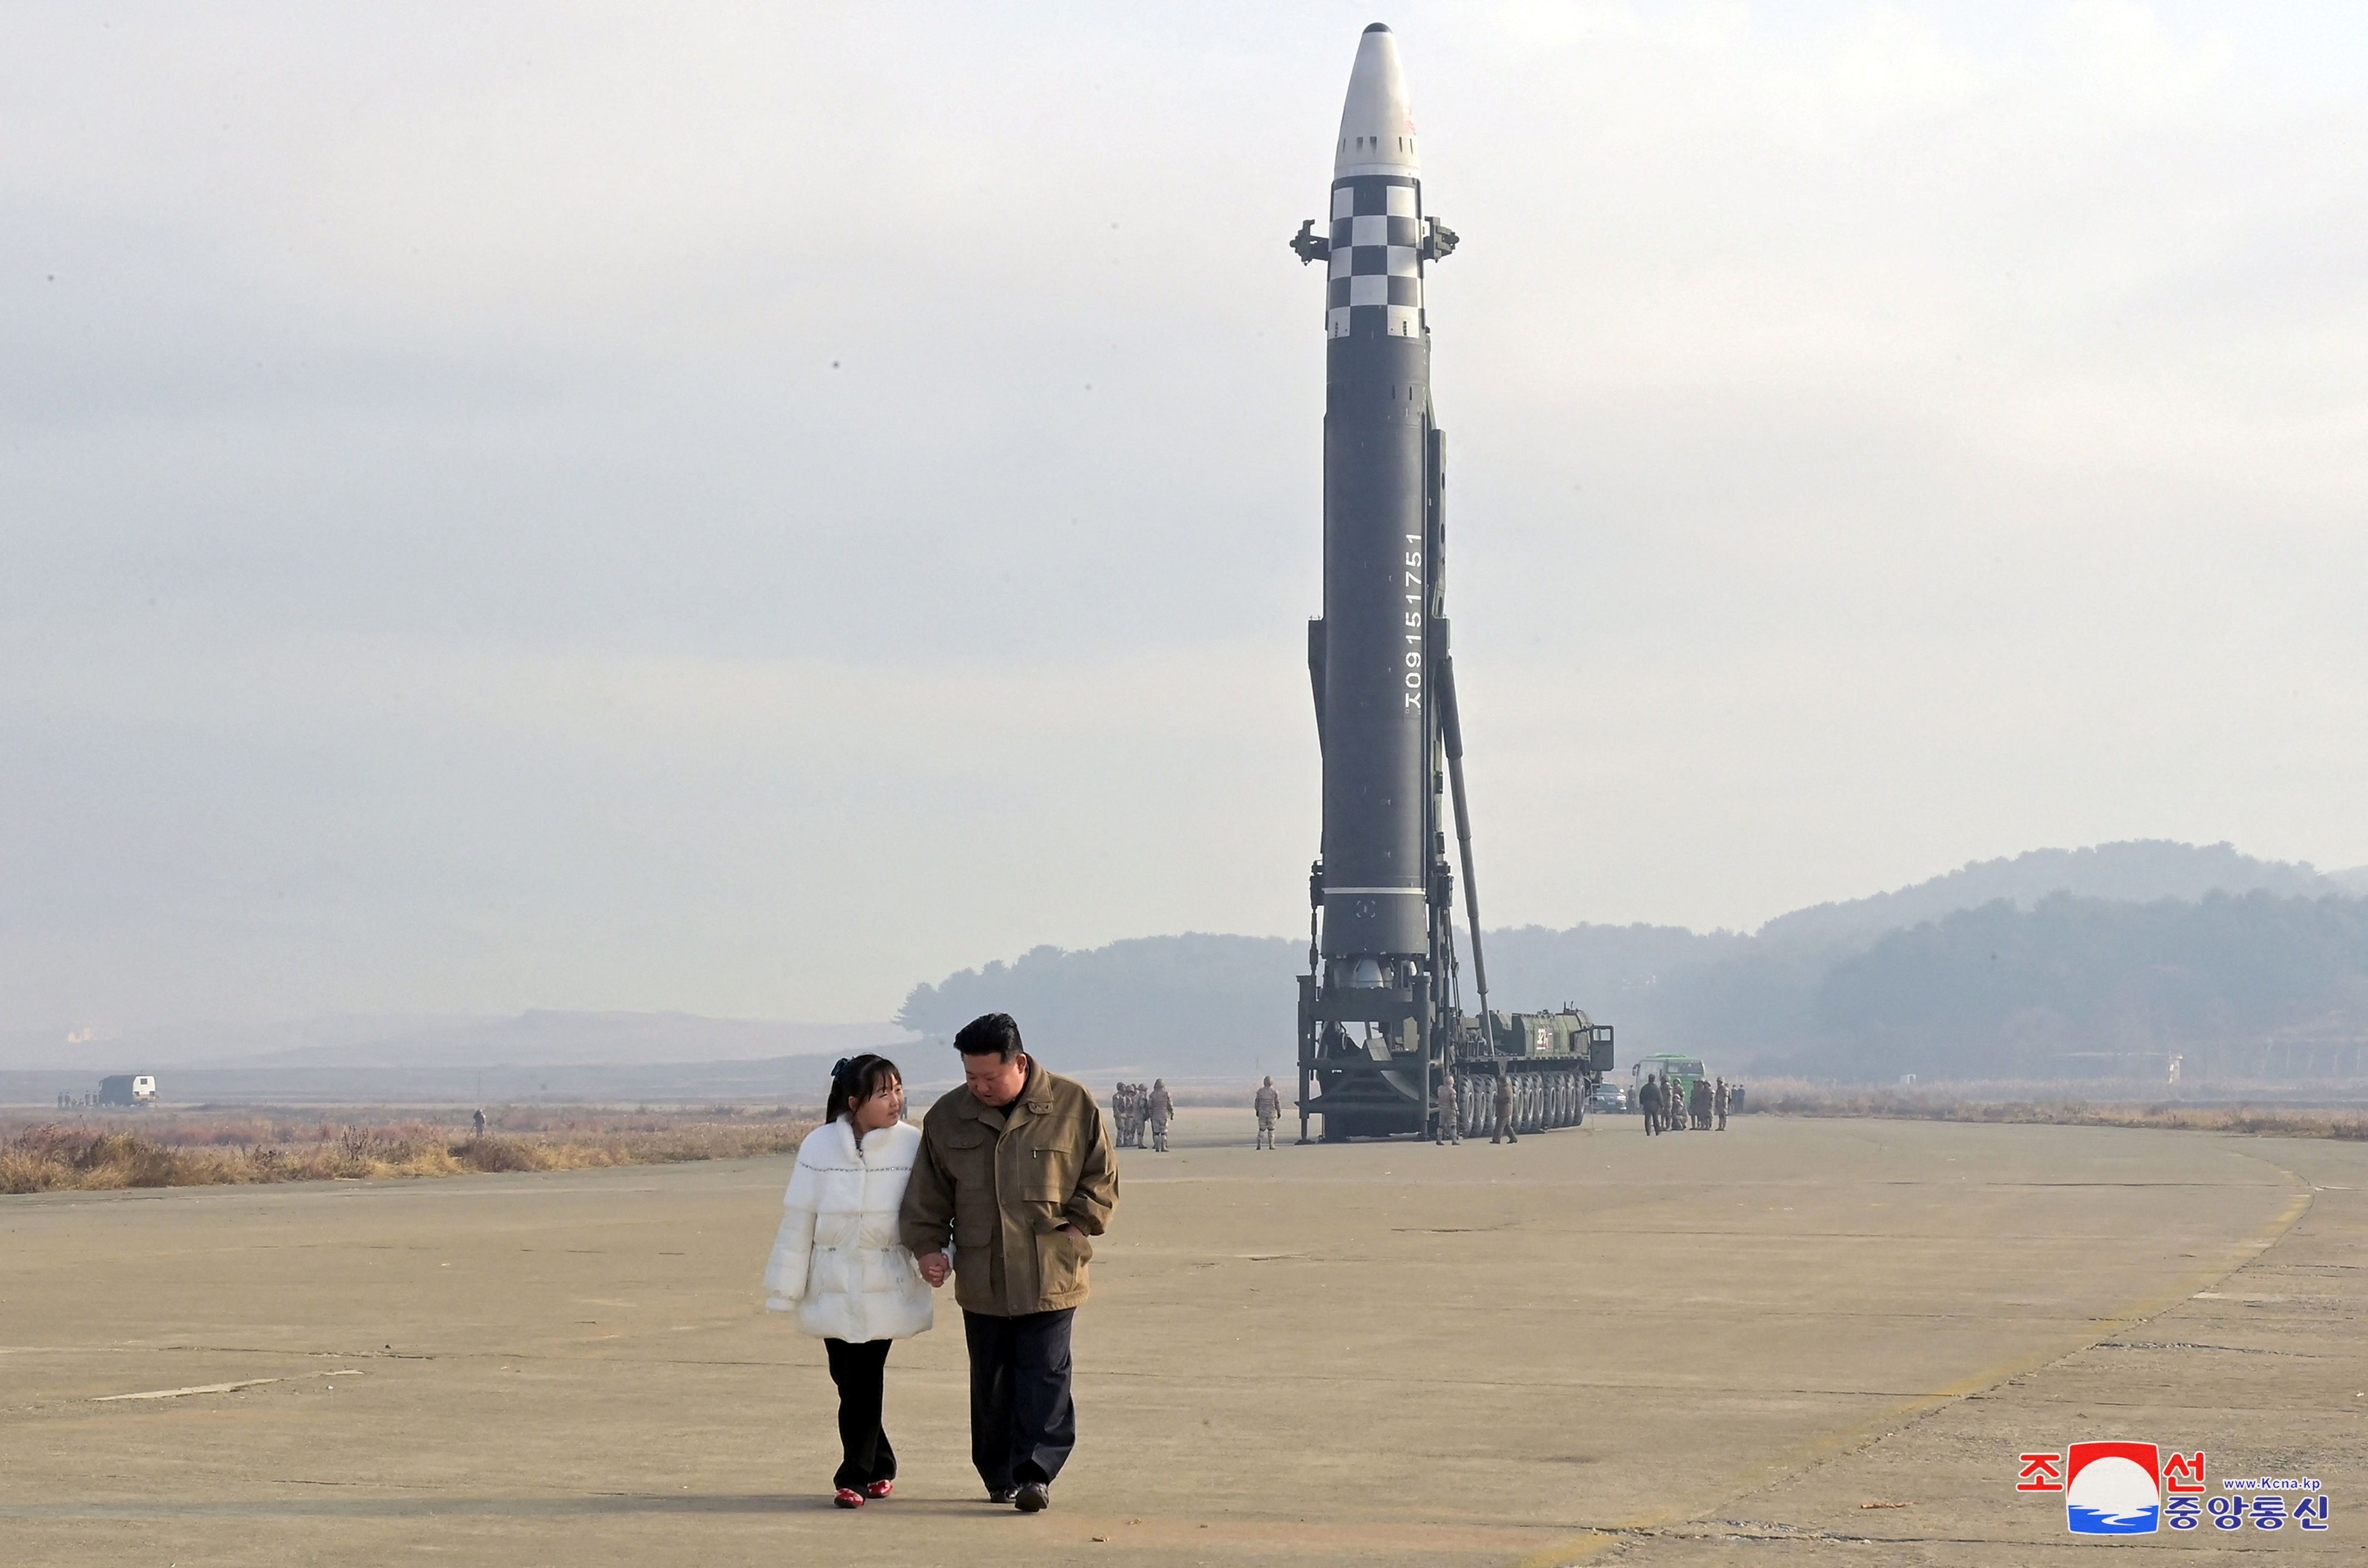 El líder norcoreano, Kim Jong Un, se aleja de un misil balístico intercontinental (ICBM) en esta foto sin fecha publicada el 19 de noviembre de 2022 (KCNA via REUTERS)